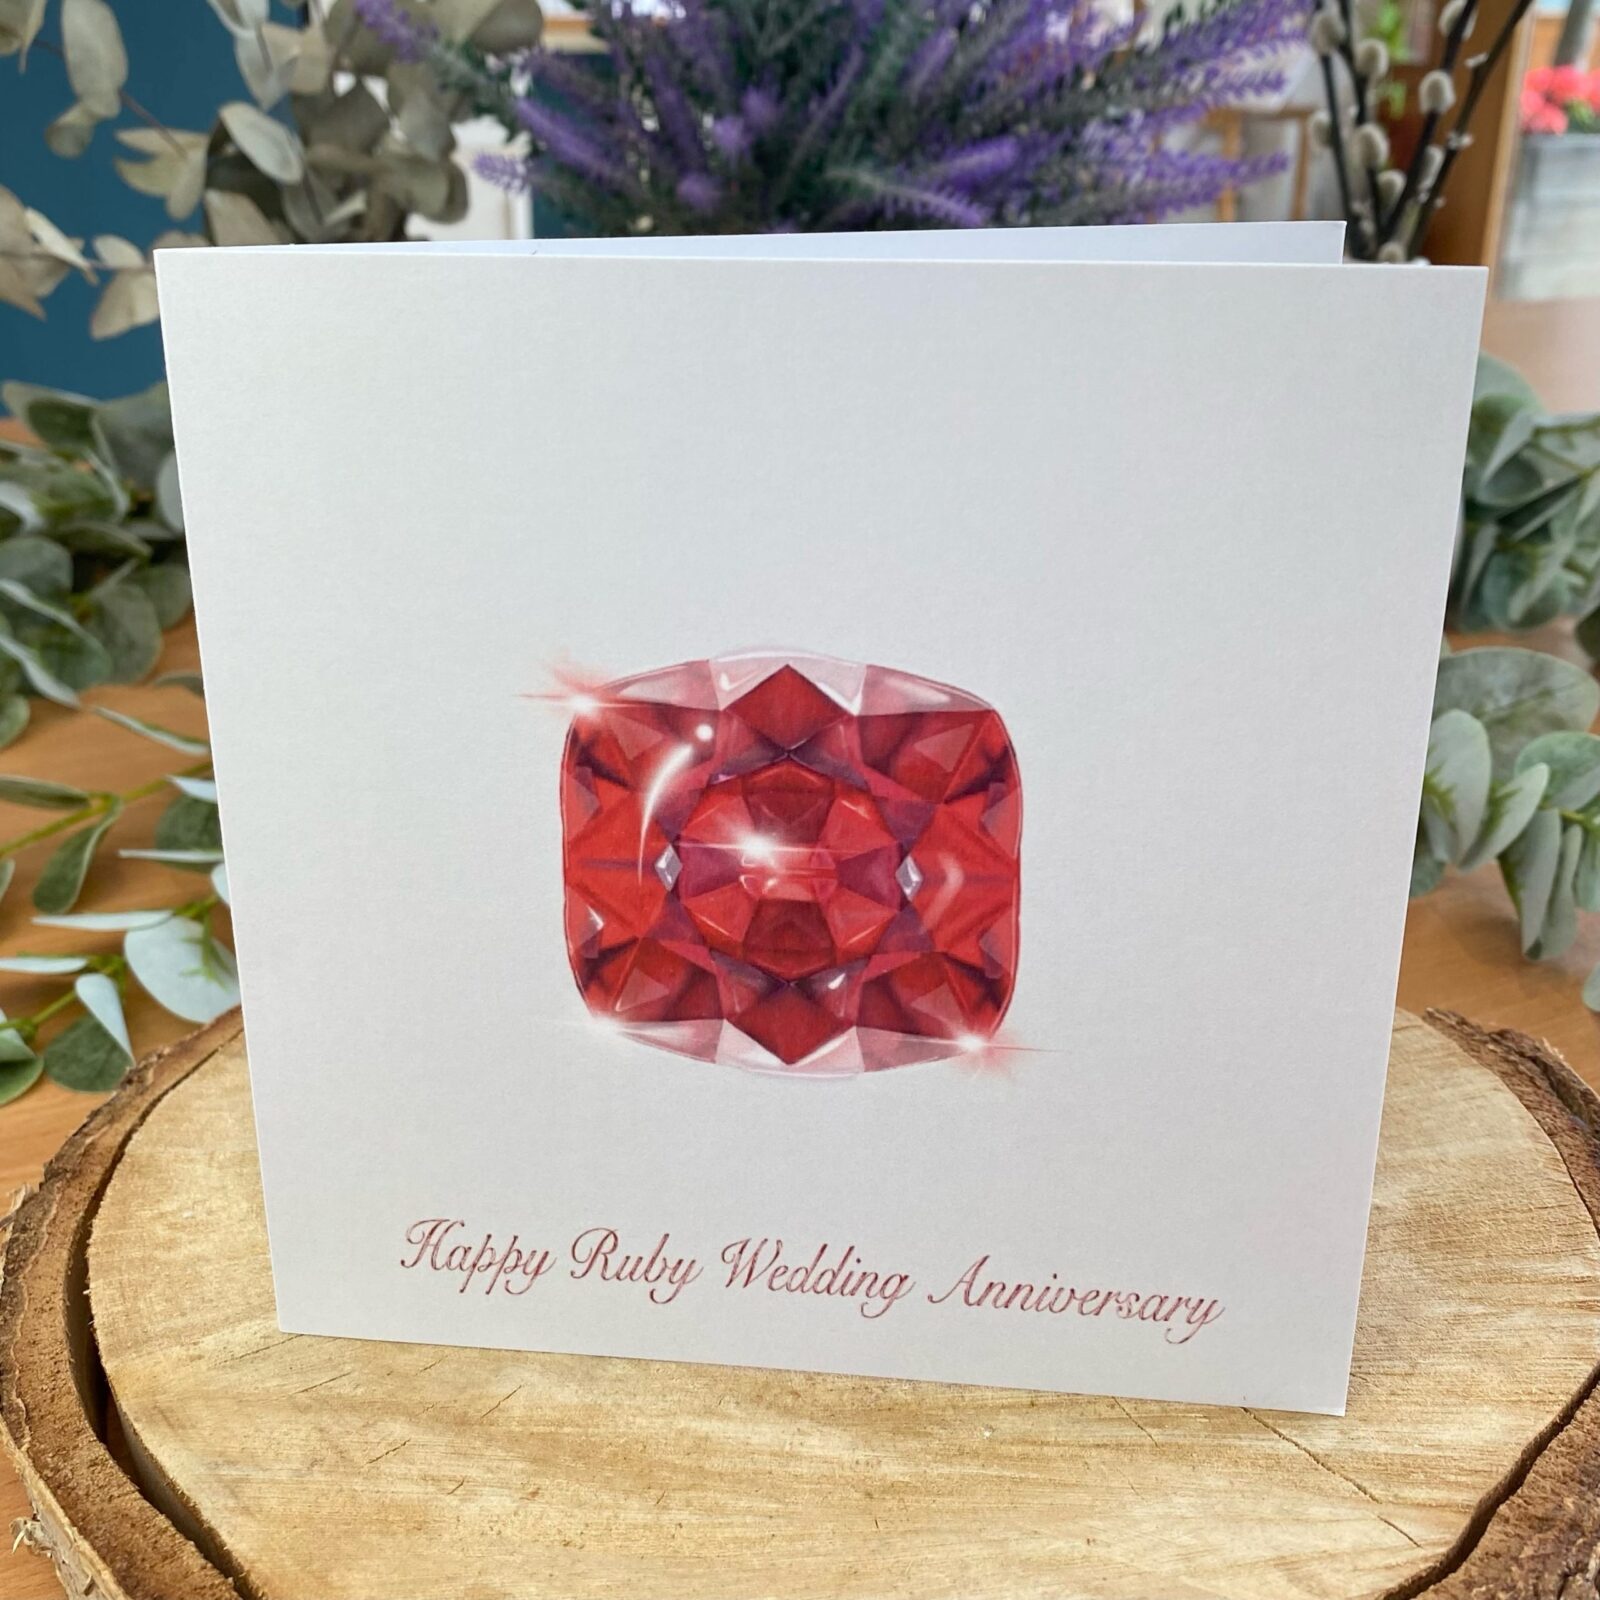 Happy Ruby Wedding Anniversary Card